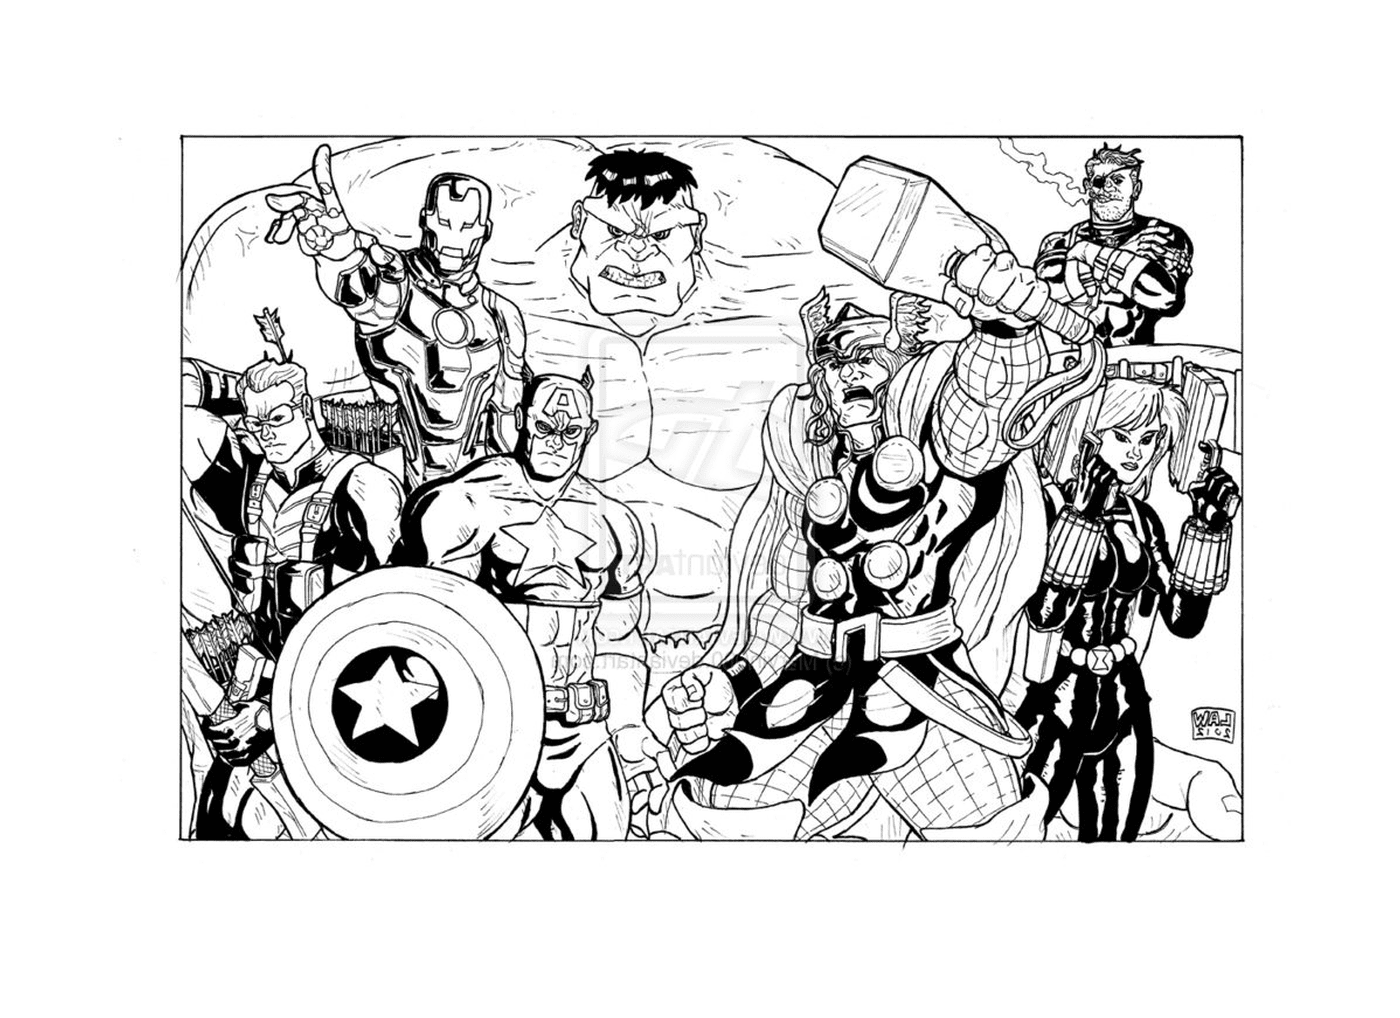  Группа супергероев, стоящих бок о бок 